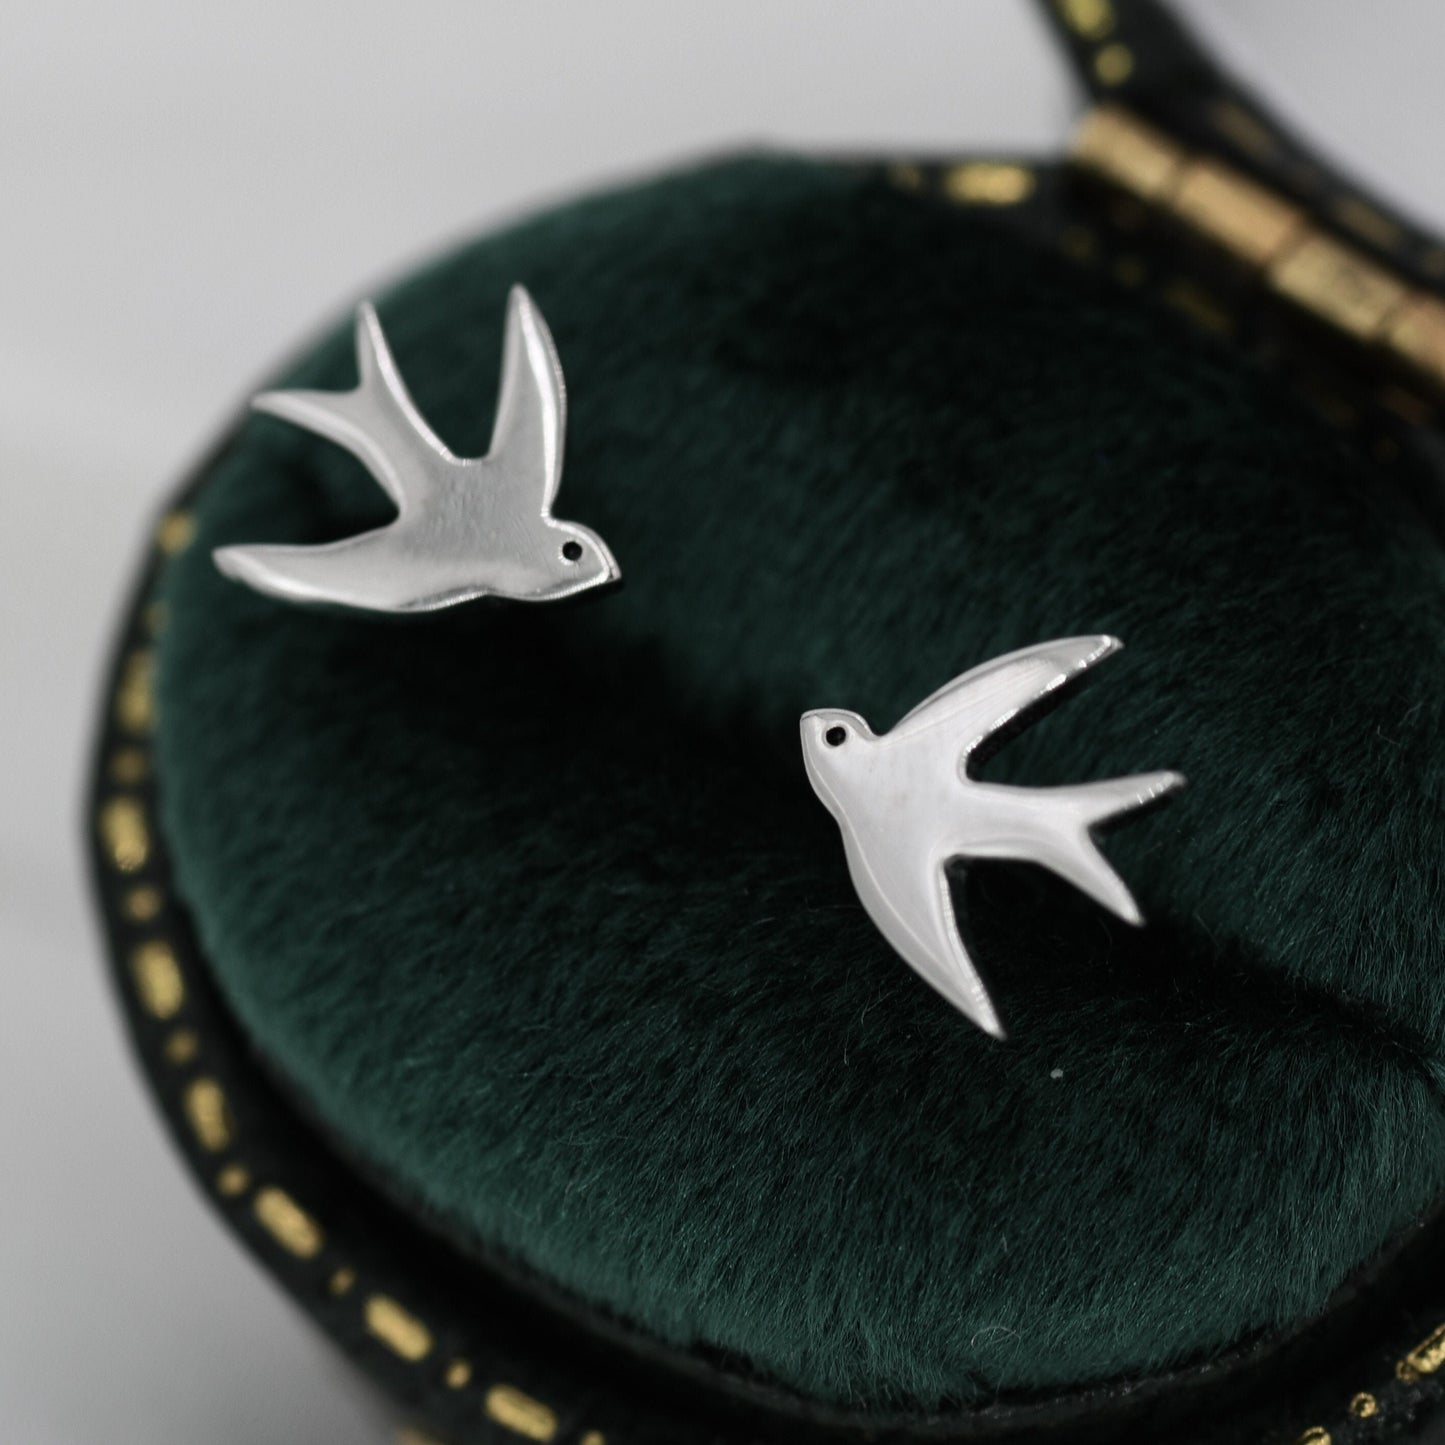 Swallow Bird Stud Earrings in Sterling Silver Flying Bird Earrings, Silver or Gold or Rose Gold,  Nature Inspired Animal Earrings